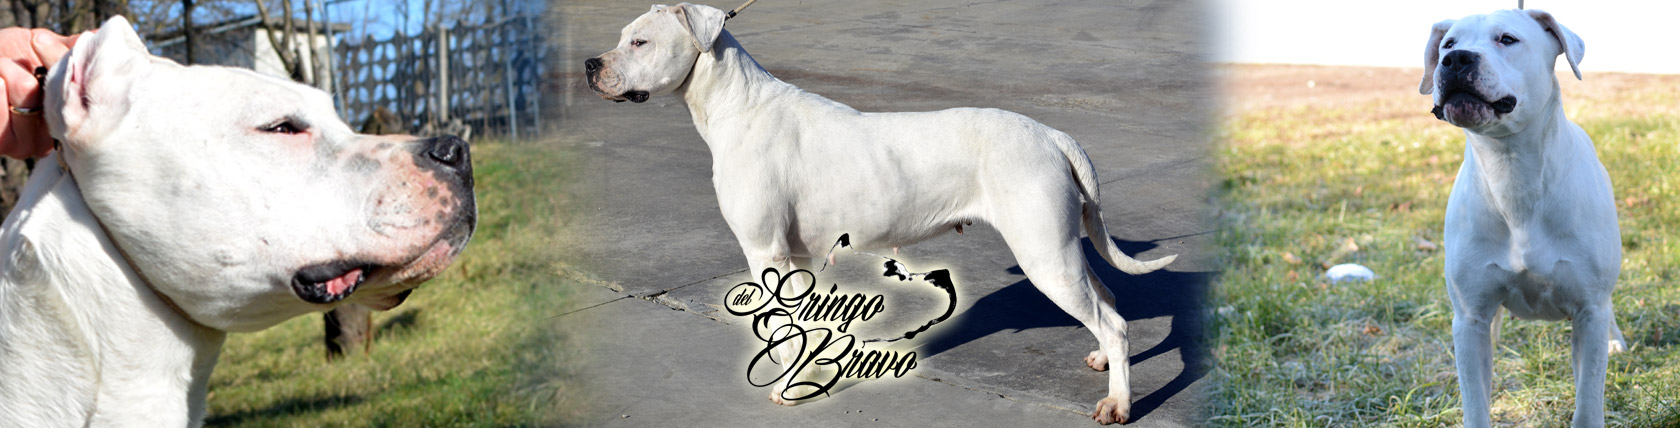 Dogo Argentino - DemiMoore del Gringo Bravo